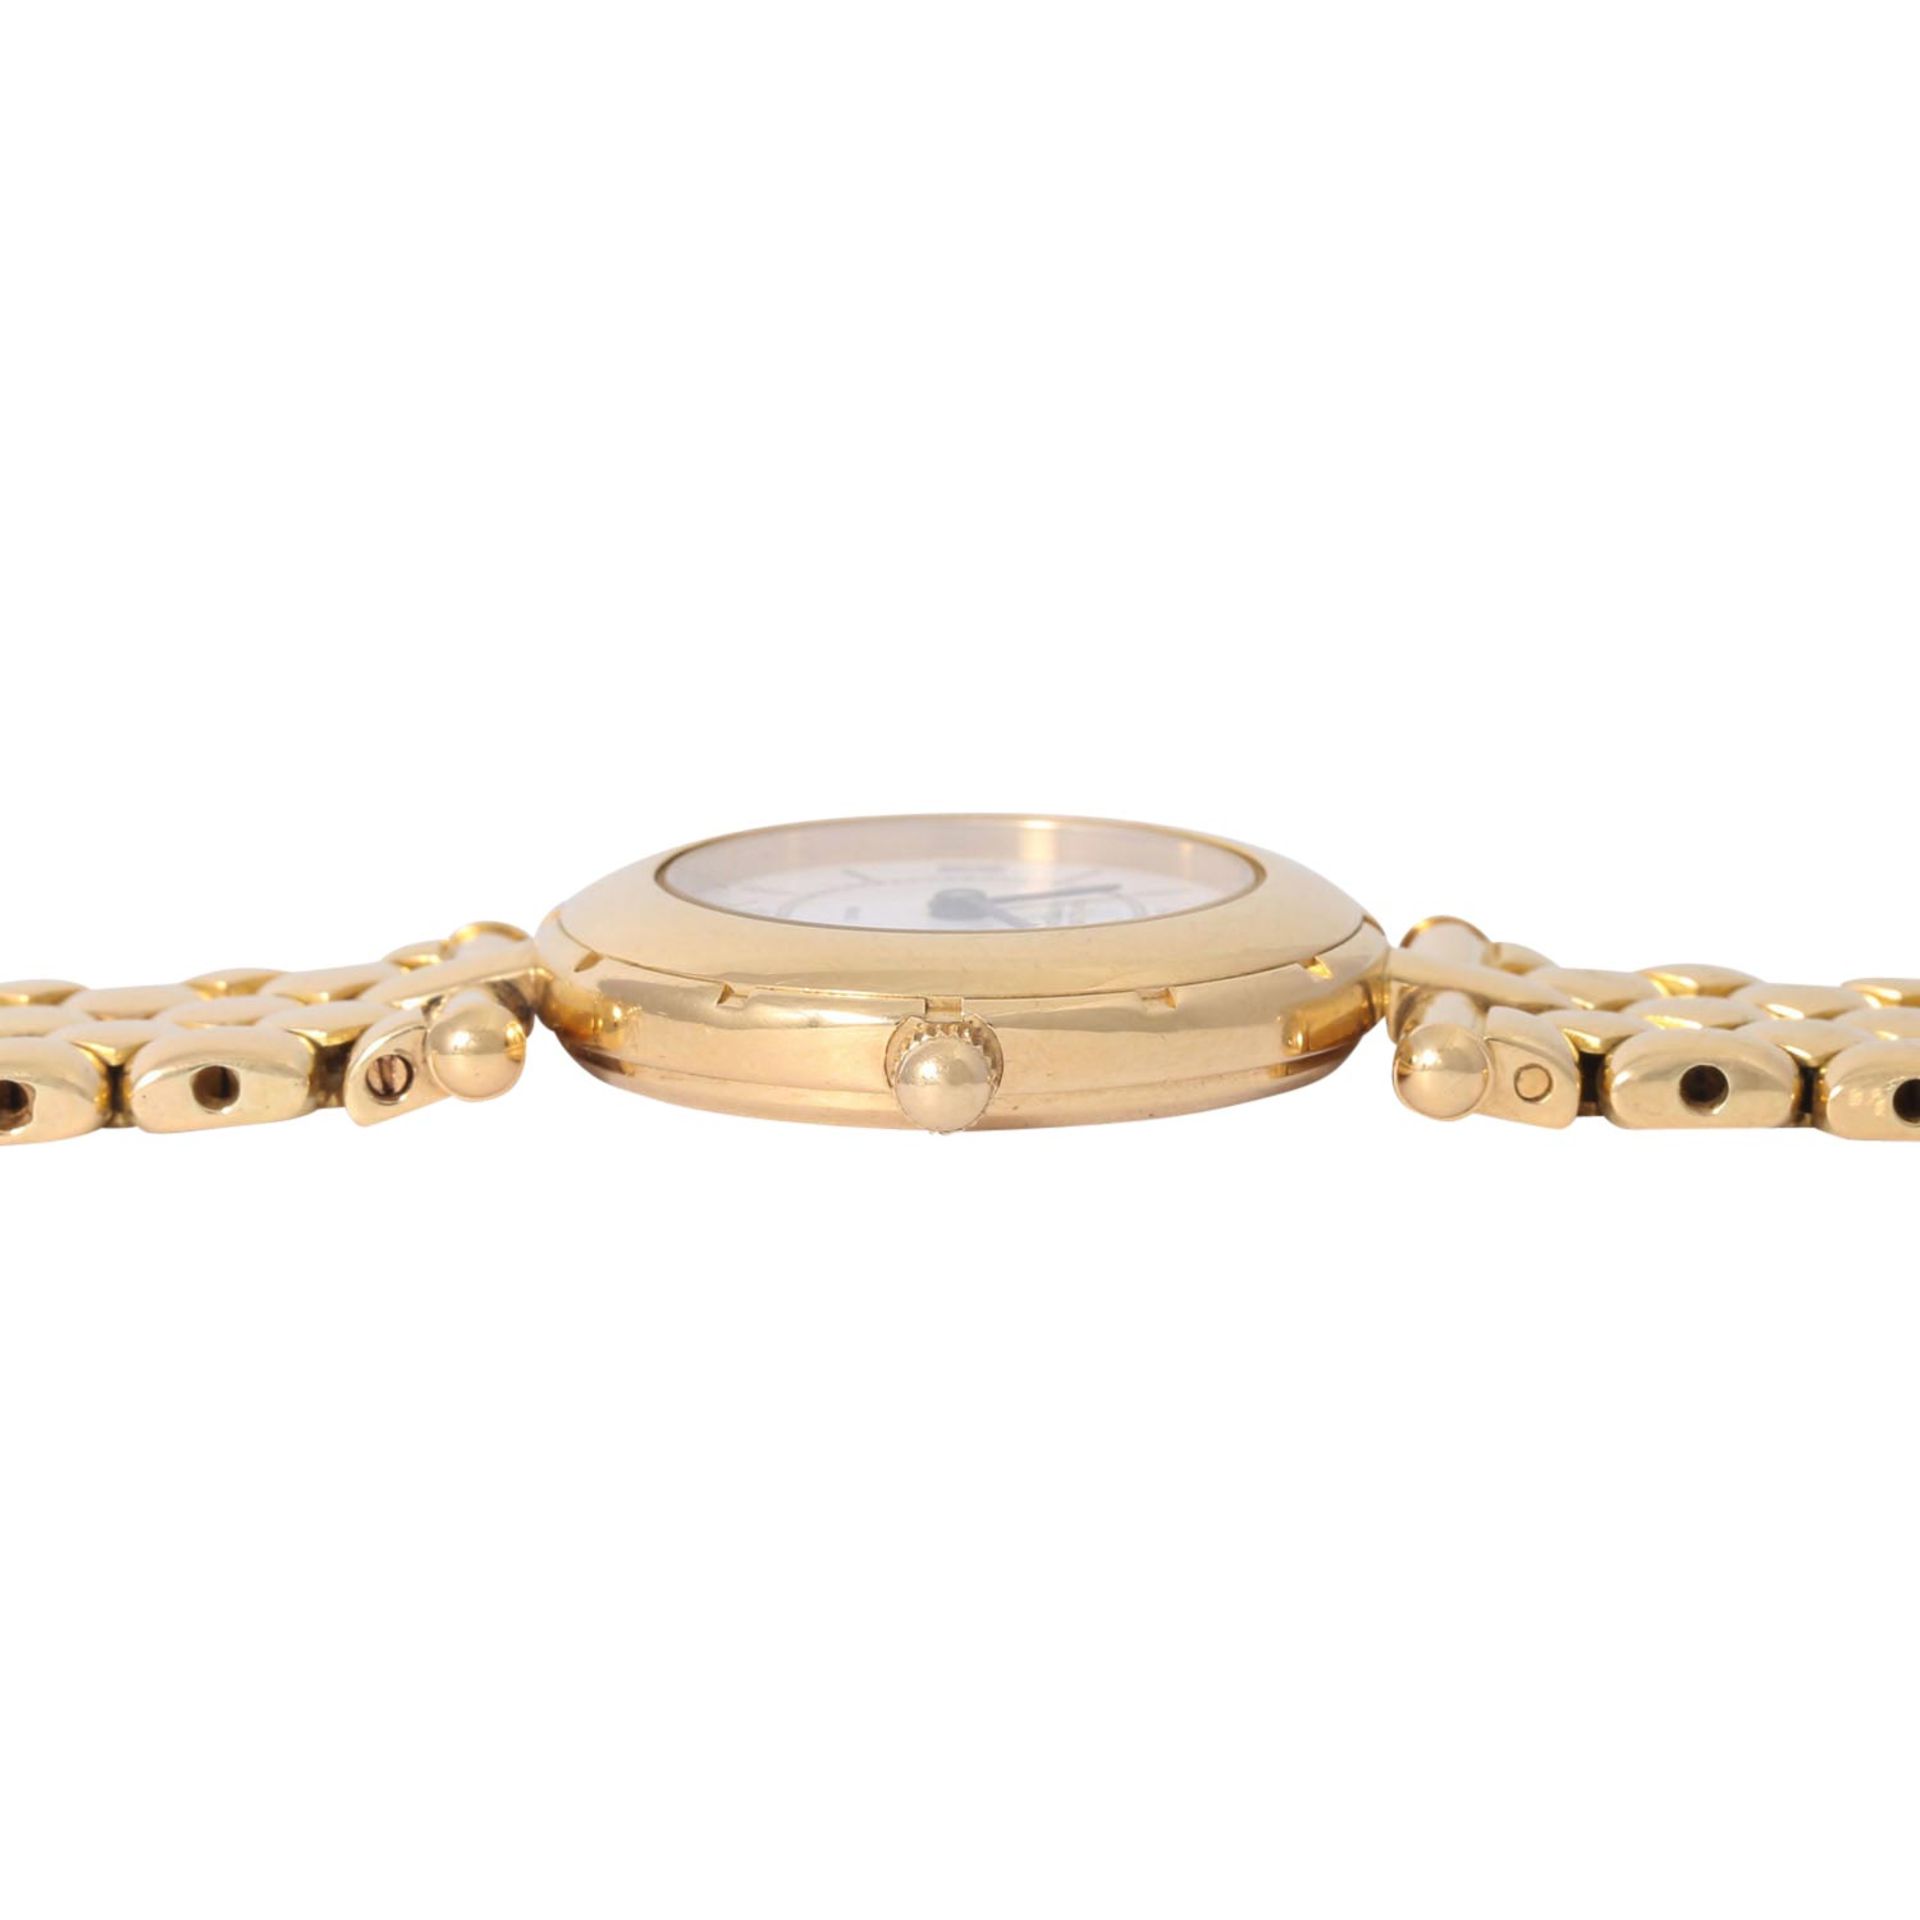 VAN CLEEF & ARPELS hochfeine Damen Armbanduhr, Ref. 13607. Ca. 1990er Jahre. - Image 3 of 8